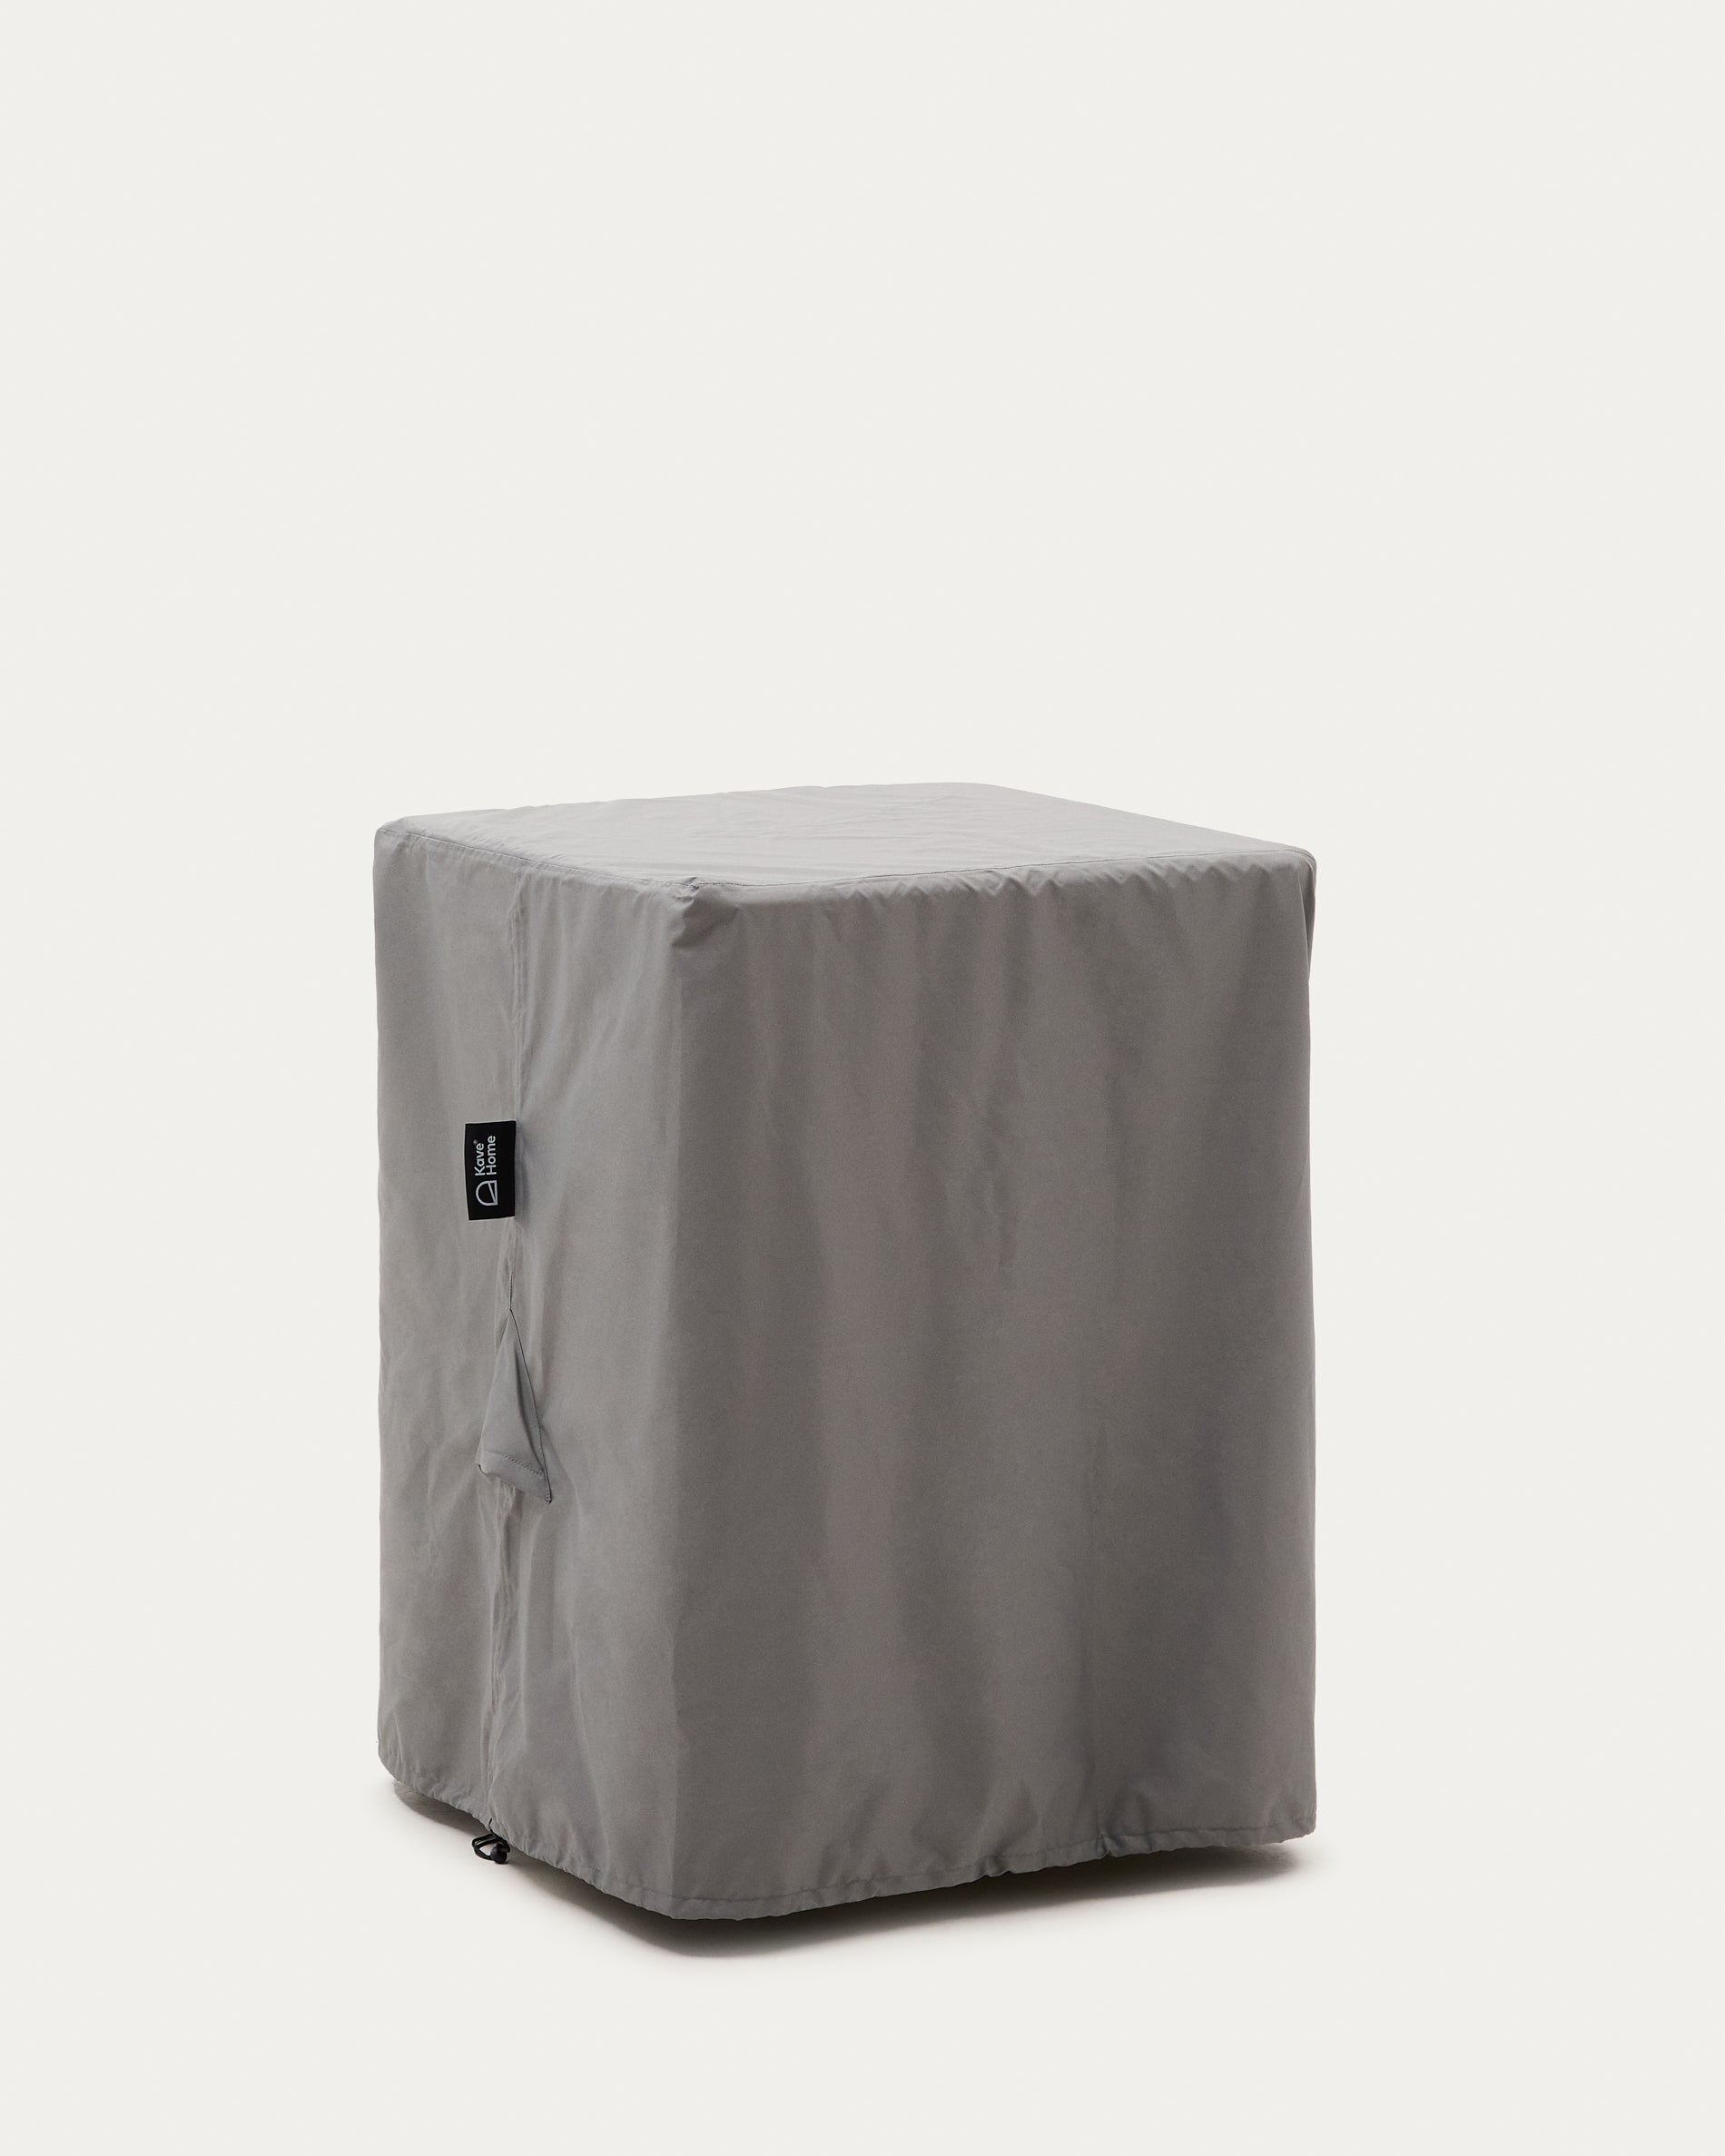 Iria védőhuzat 4 darab egymásra helyezhető kültéri székhez, max. 80 x 65 cm